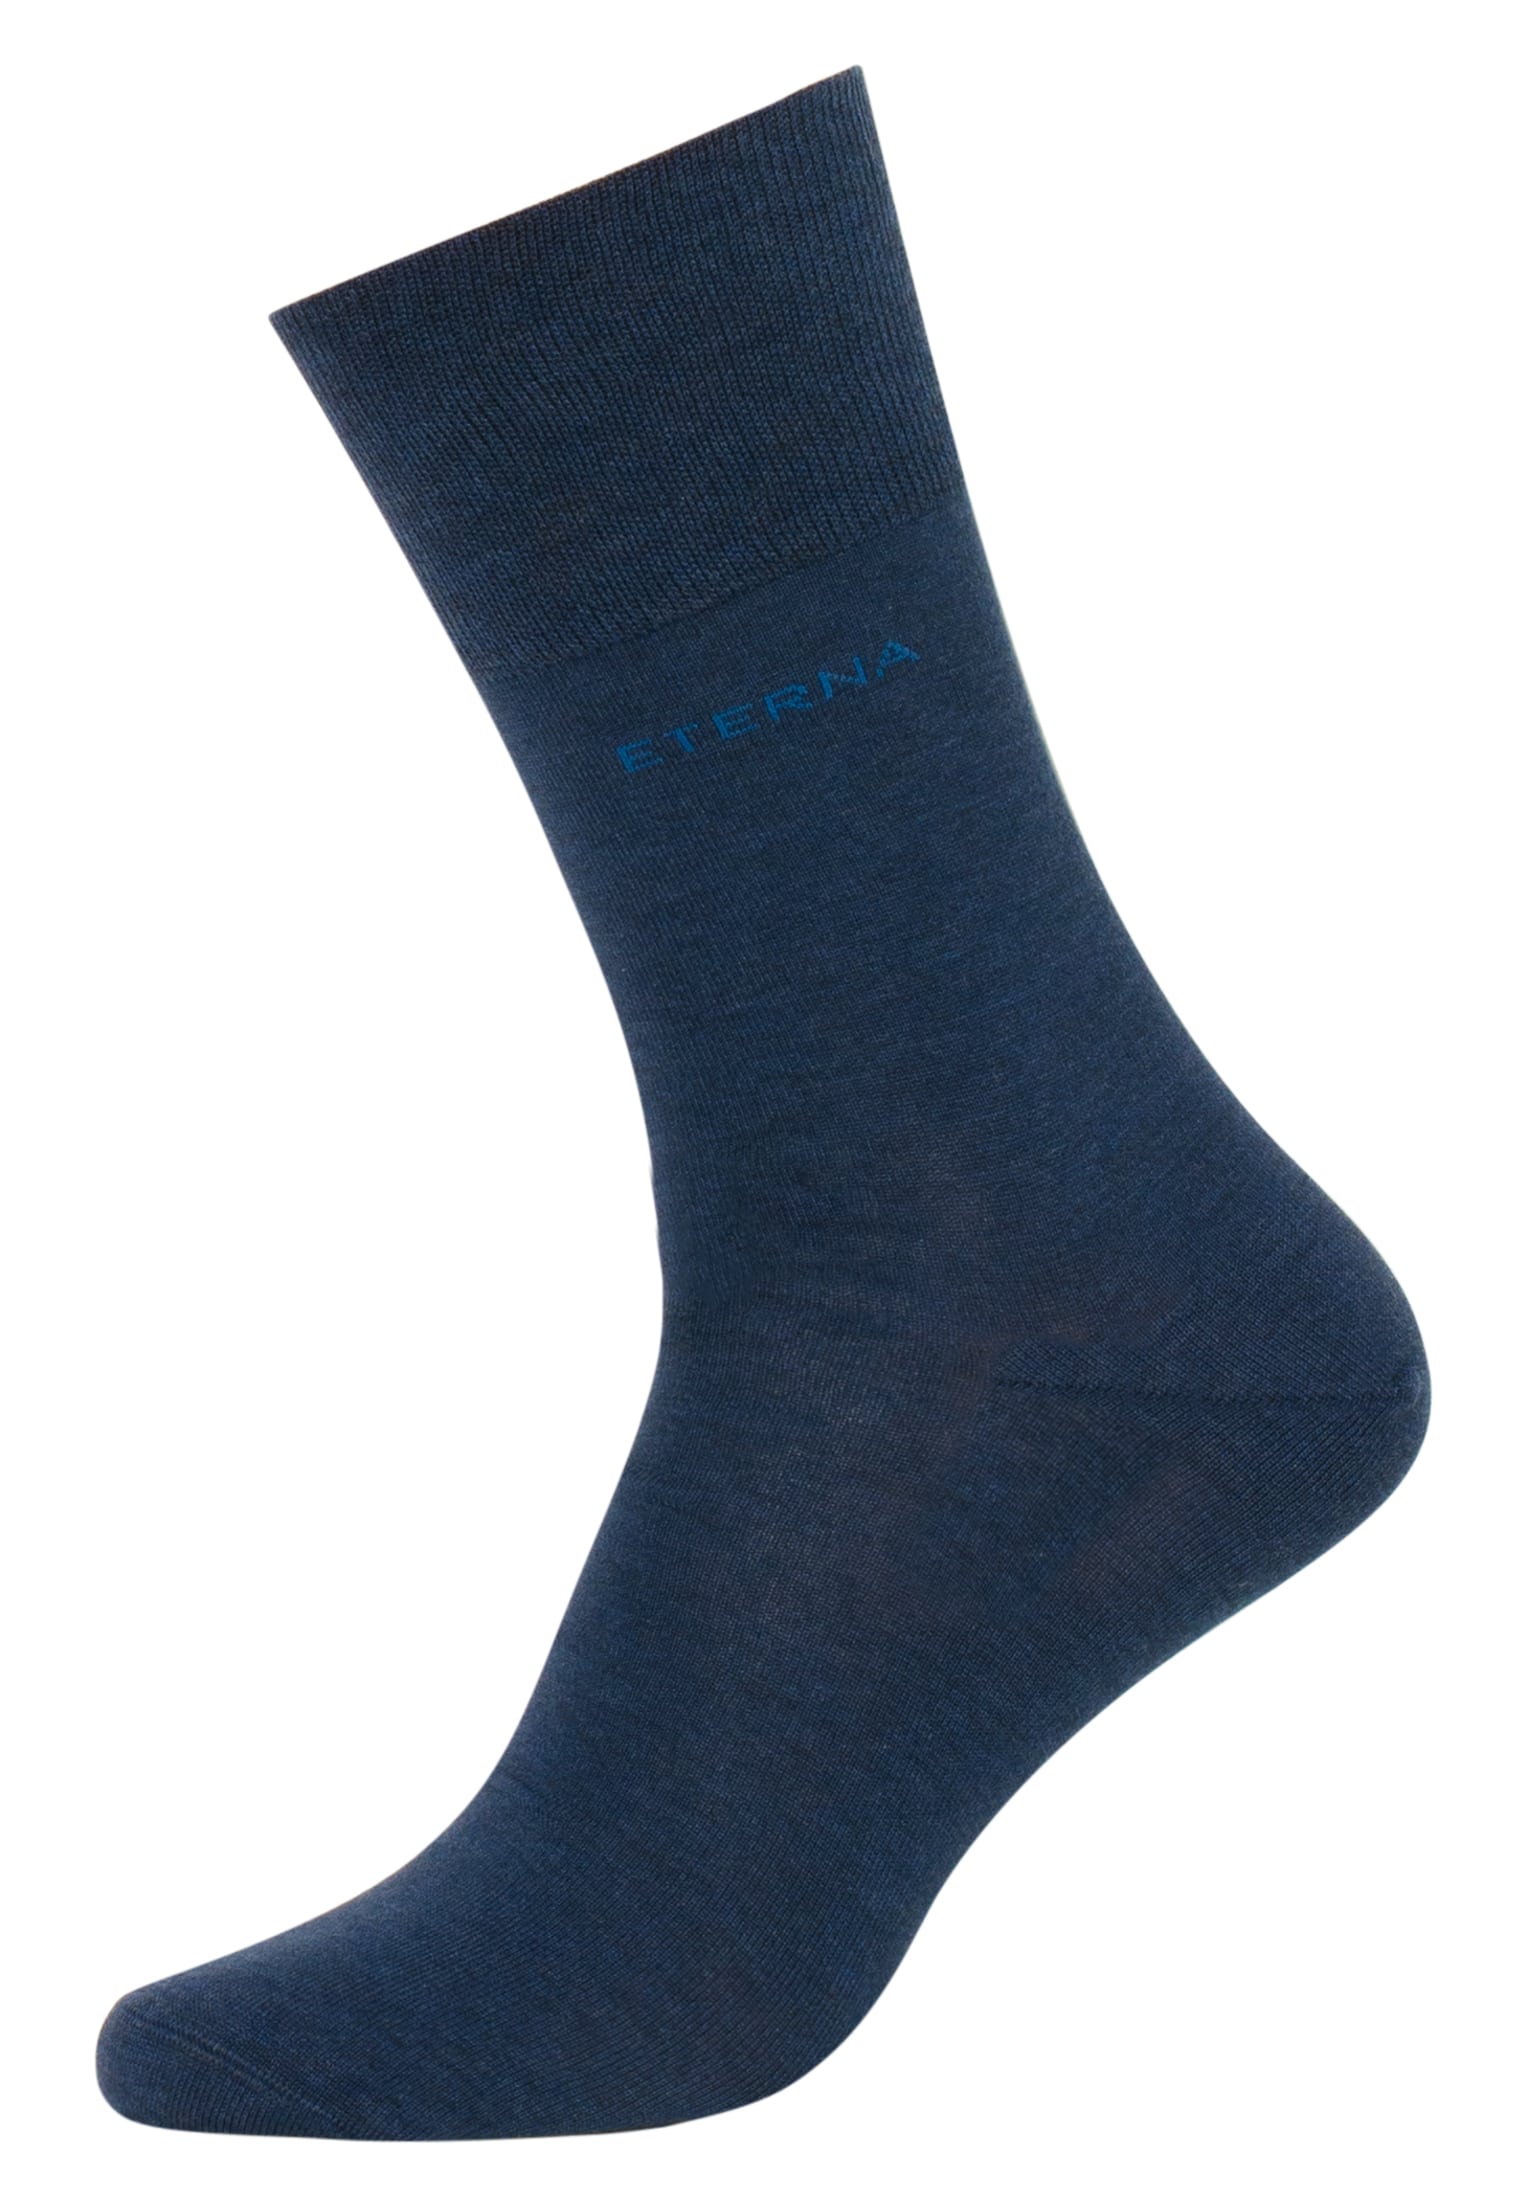 Socken in blau unifarben